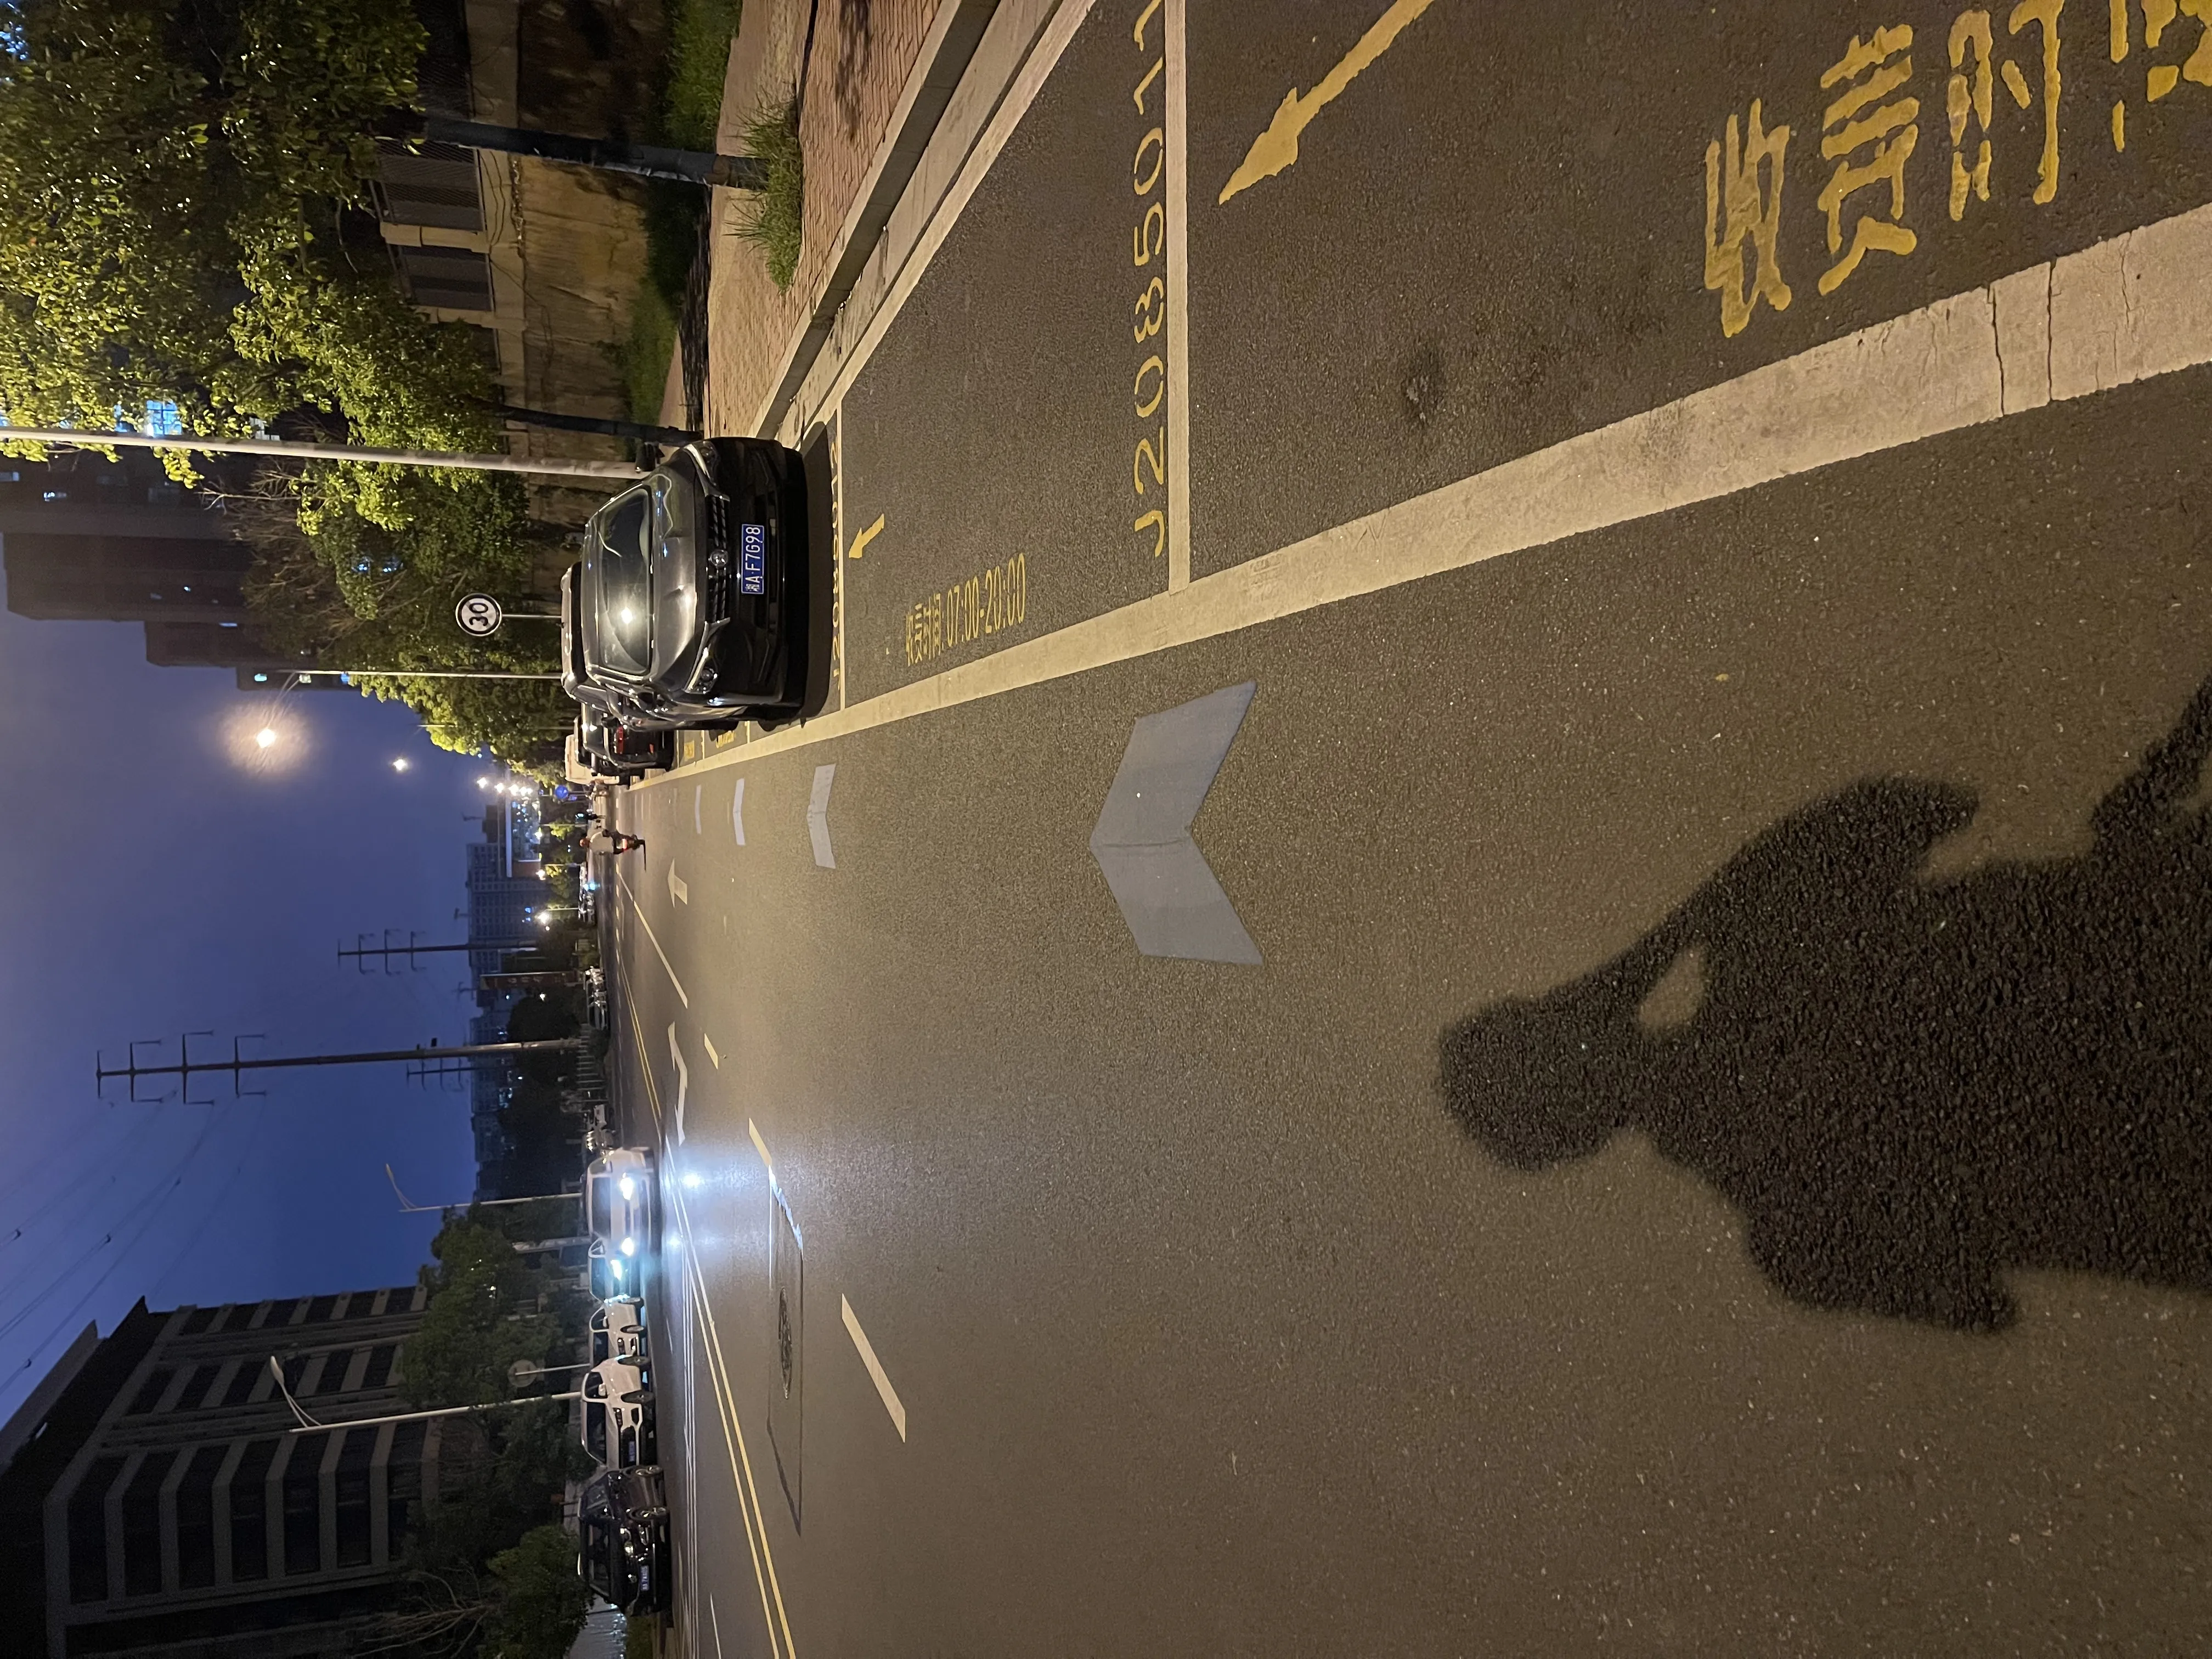 Biking lane in Changsha